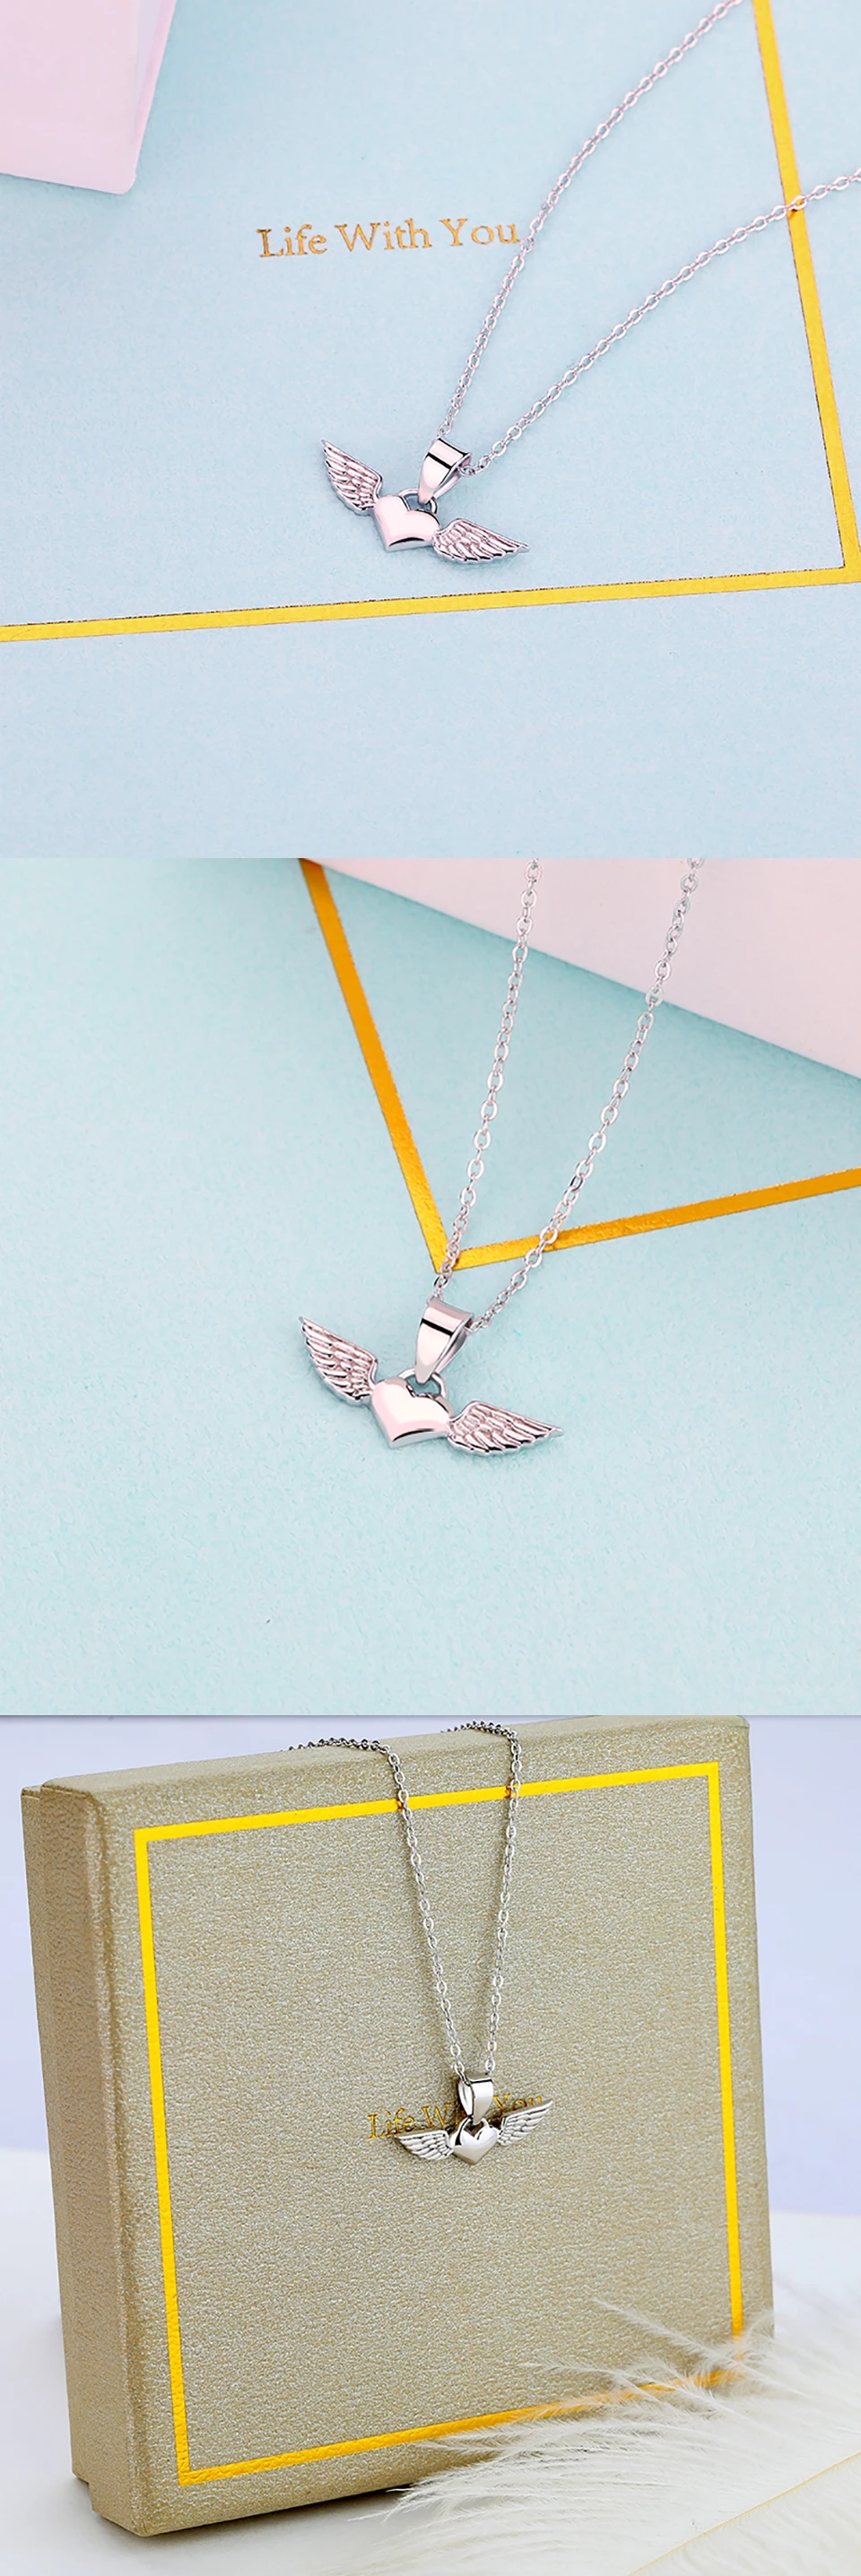 JXXGS модное женское ожерелье 925 пробы Серебряное ожерелье в форме сердца с подвеской в виде ангела с крыльями для женщин ювелирное изделие для повседневной носки